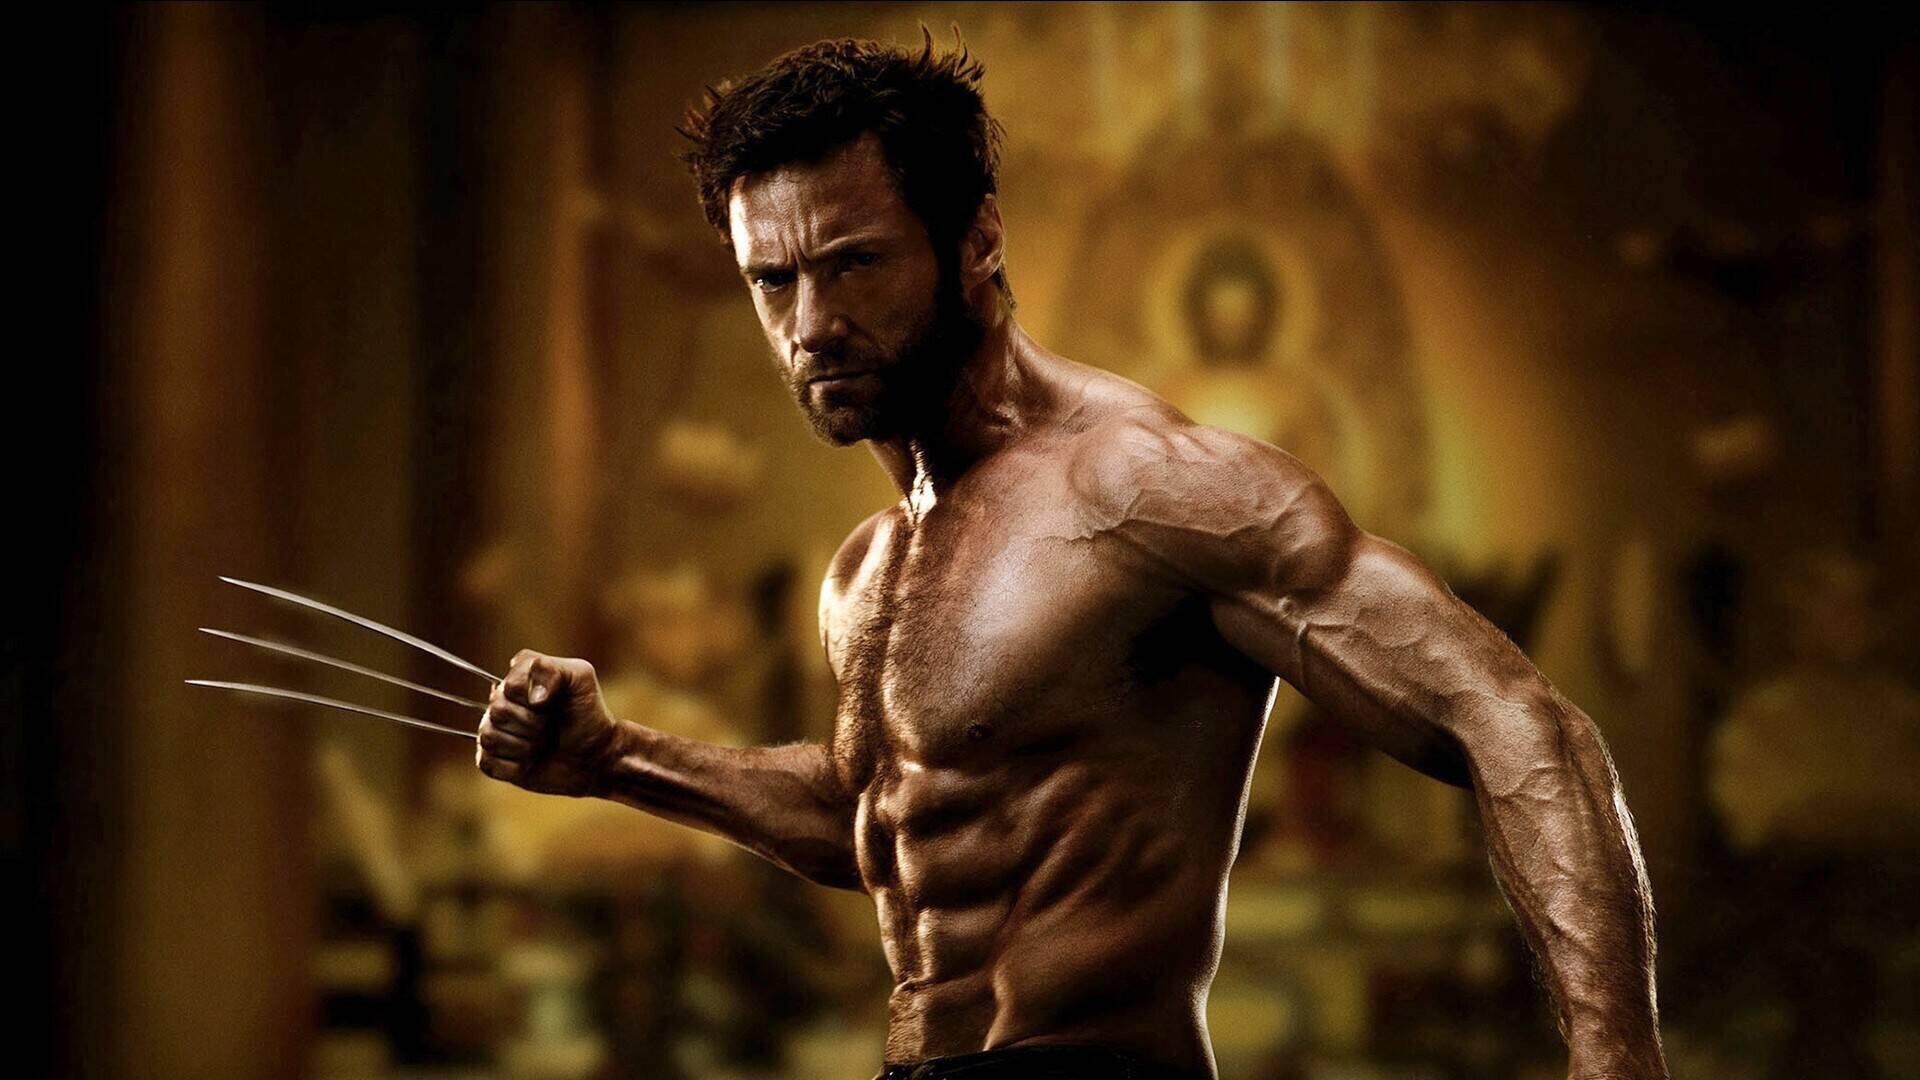 Vorschau auf Deadpool 3: Hugh Jackman wird erneut zu Wolverine